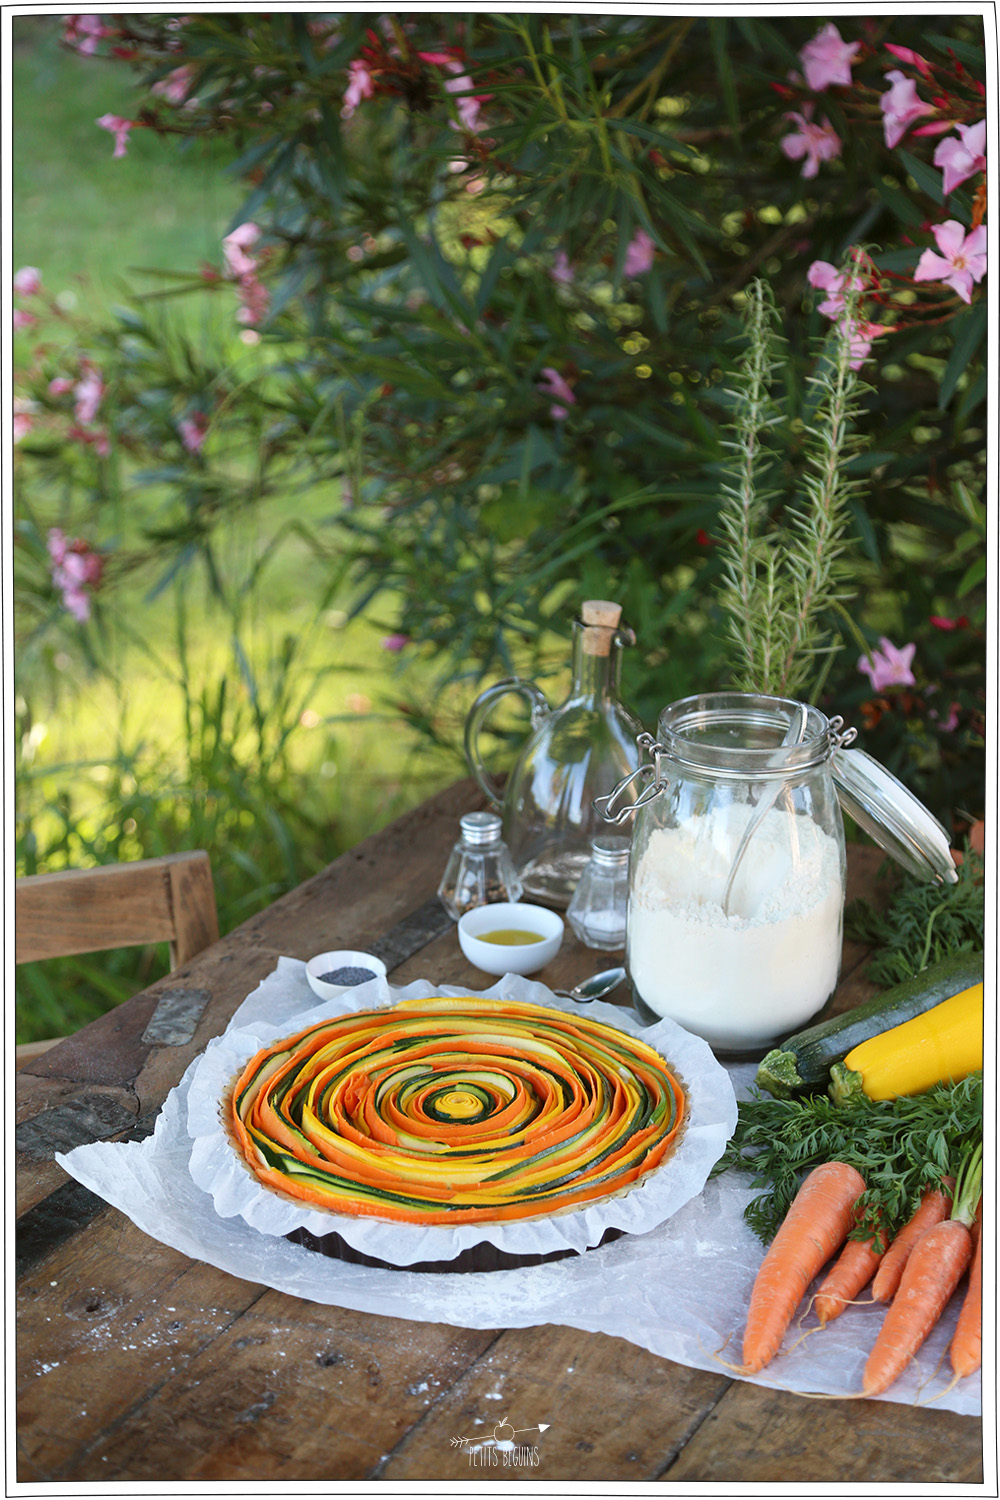 Tarte Arc-en-ciel courgettes, carottes - Recette veggie - Petits Béguins